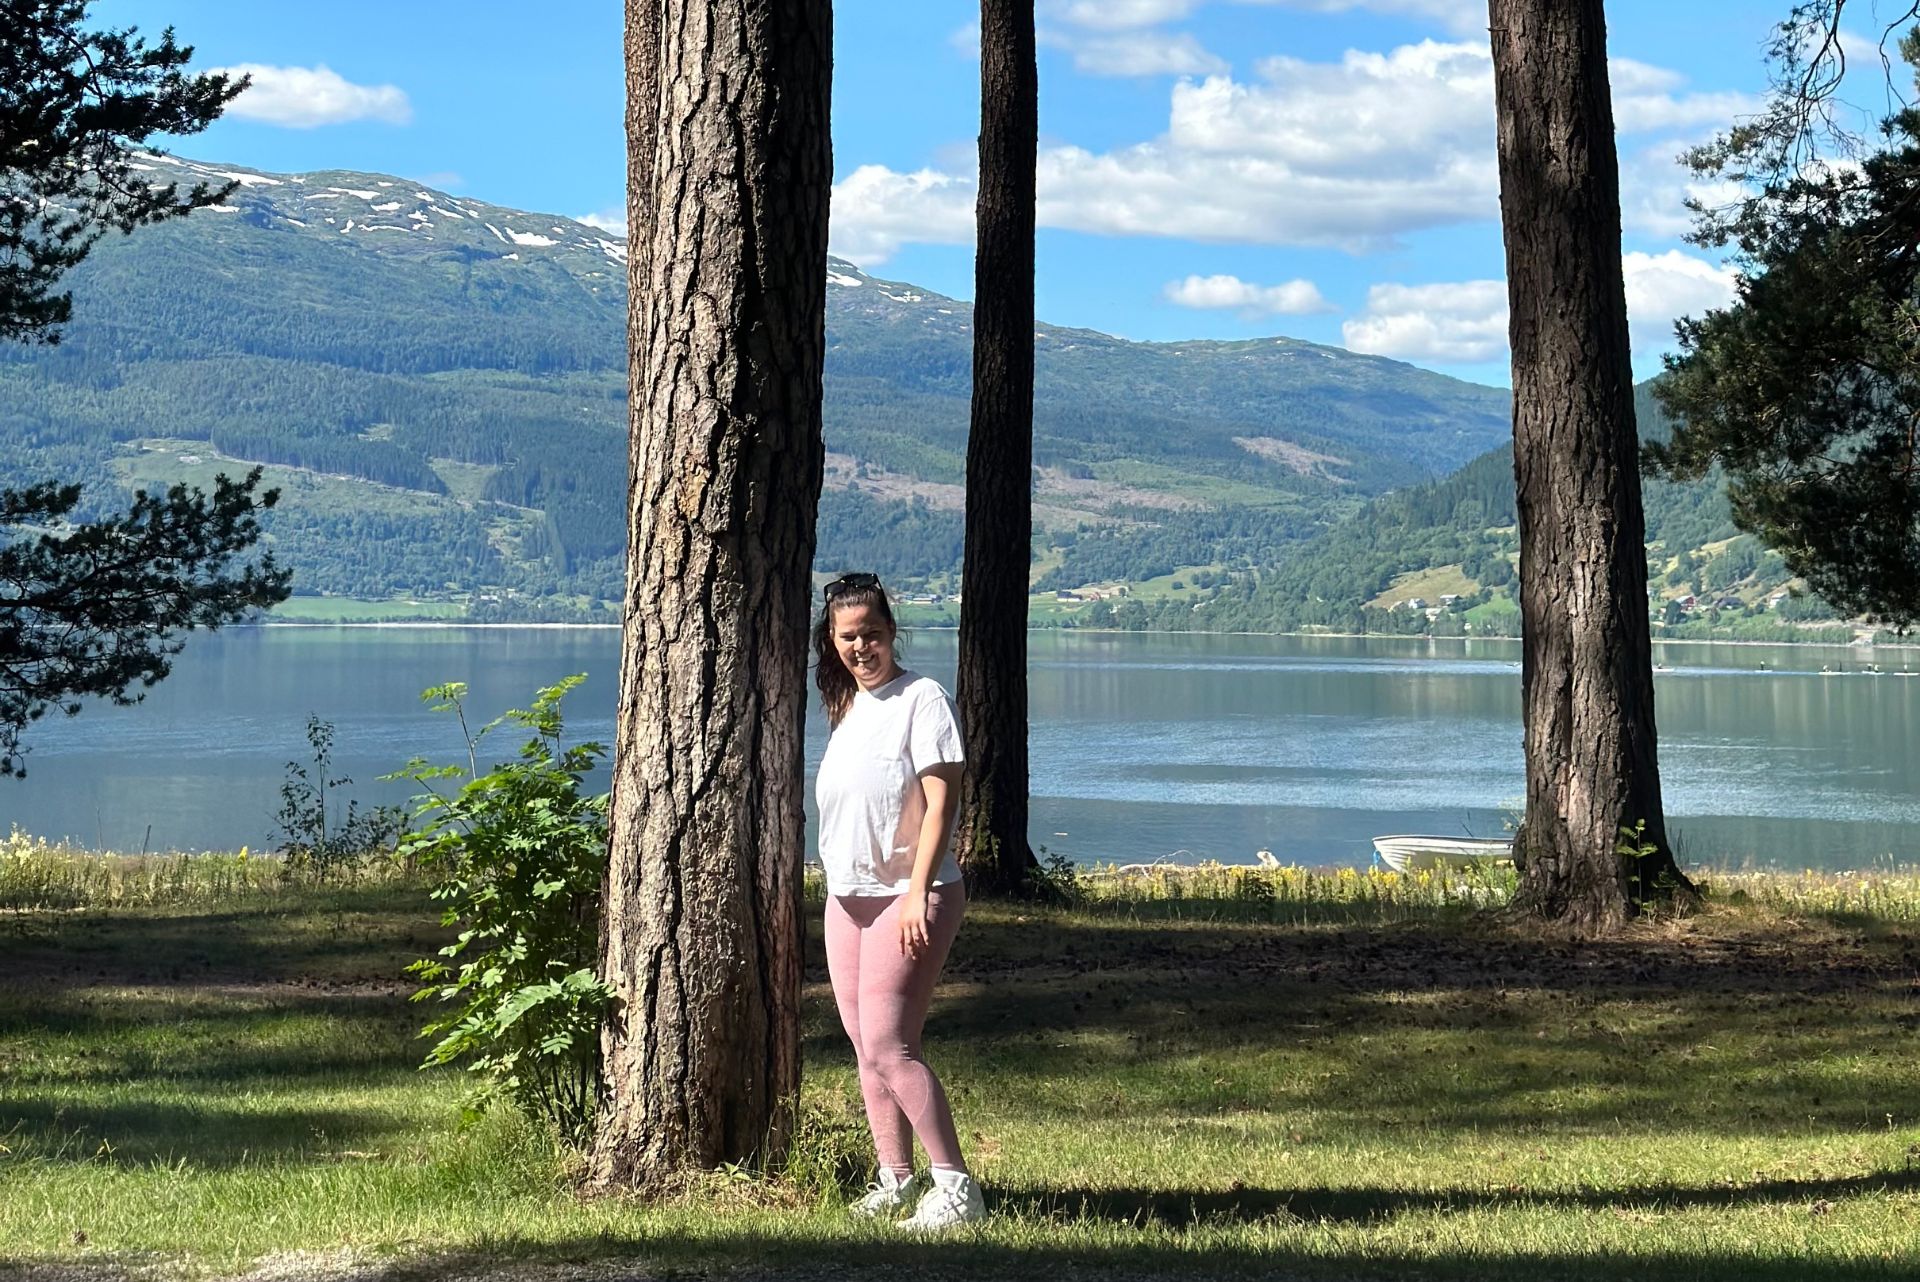 Tamarin, en ung dame, står ved siden av et høyt tre på grønt gress foran et vann og fjell i bakgrunnen. Har på rosa treningstights og hvit t-skjorte. Brunt, langt hår.